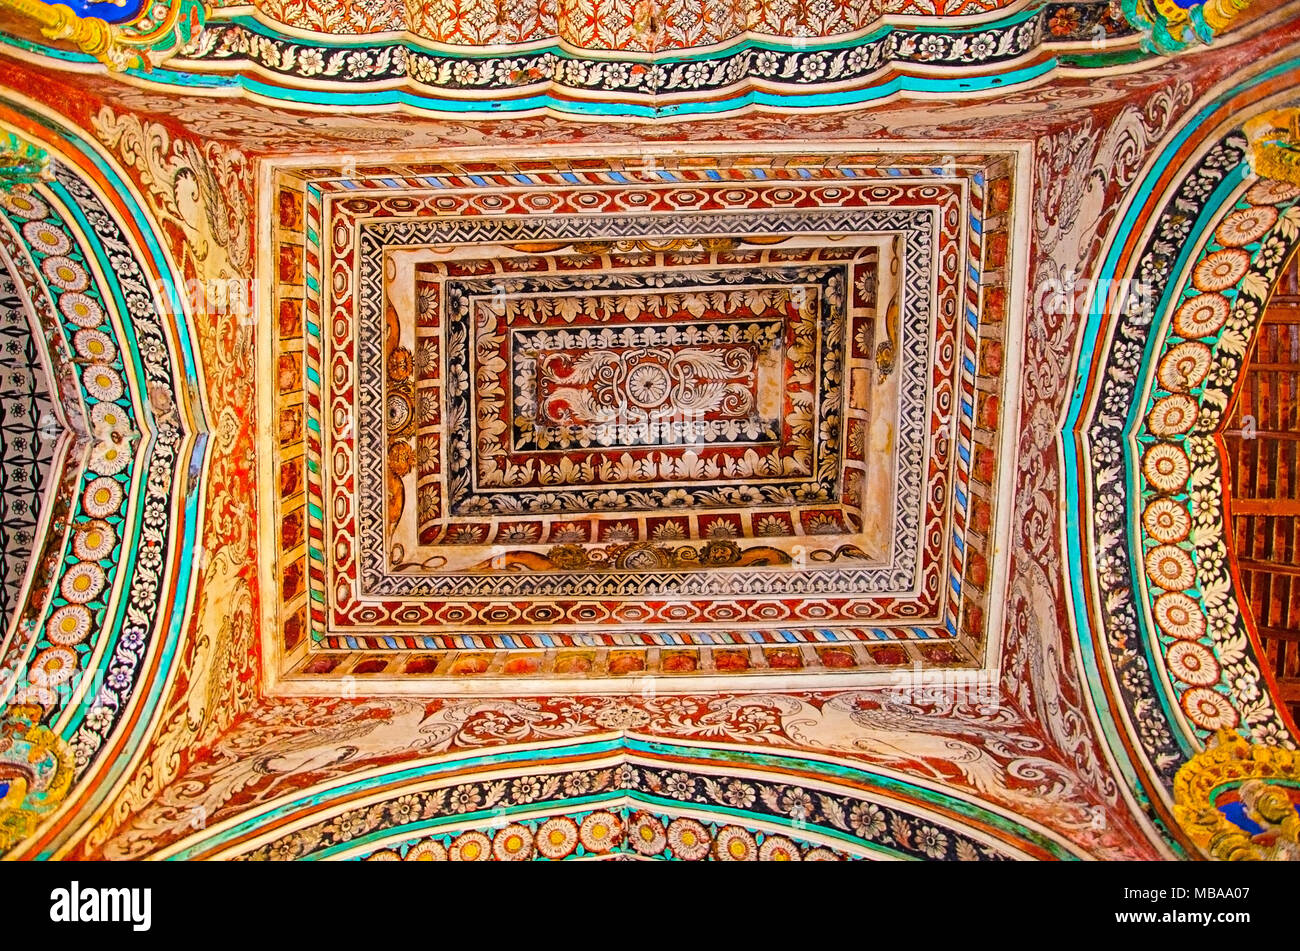 Farbenfrohe Gemälde an der Decke Wand des Darbar Halle des Thanjavur Maratha Palace, Thanjavur, Tamil Nadu, Indien. Vor Ort als Wohnsitz der Bh bekannt Stockfoto